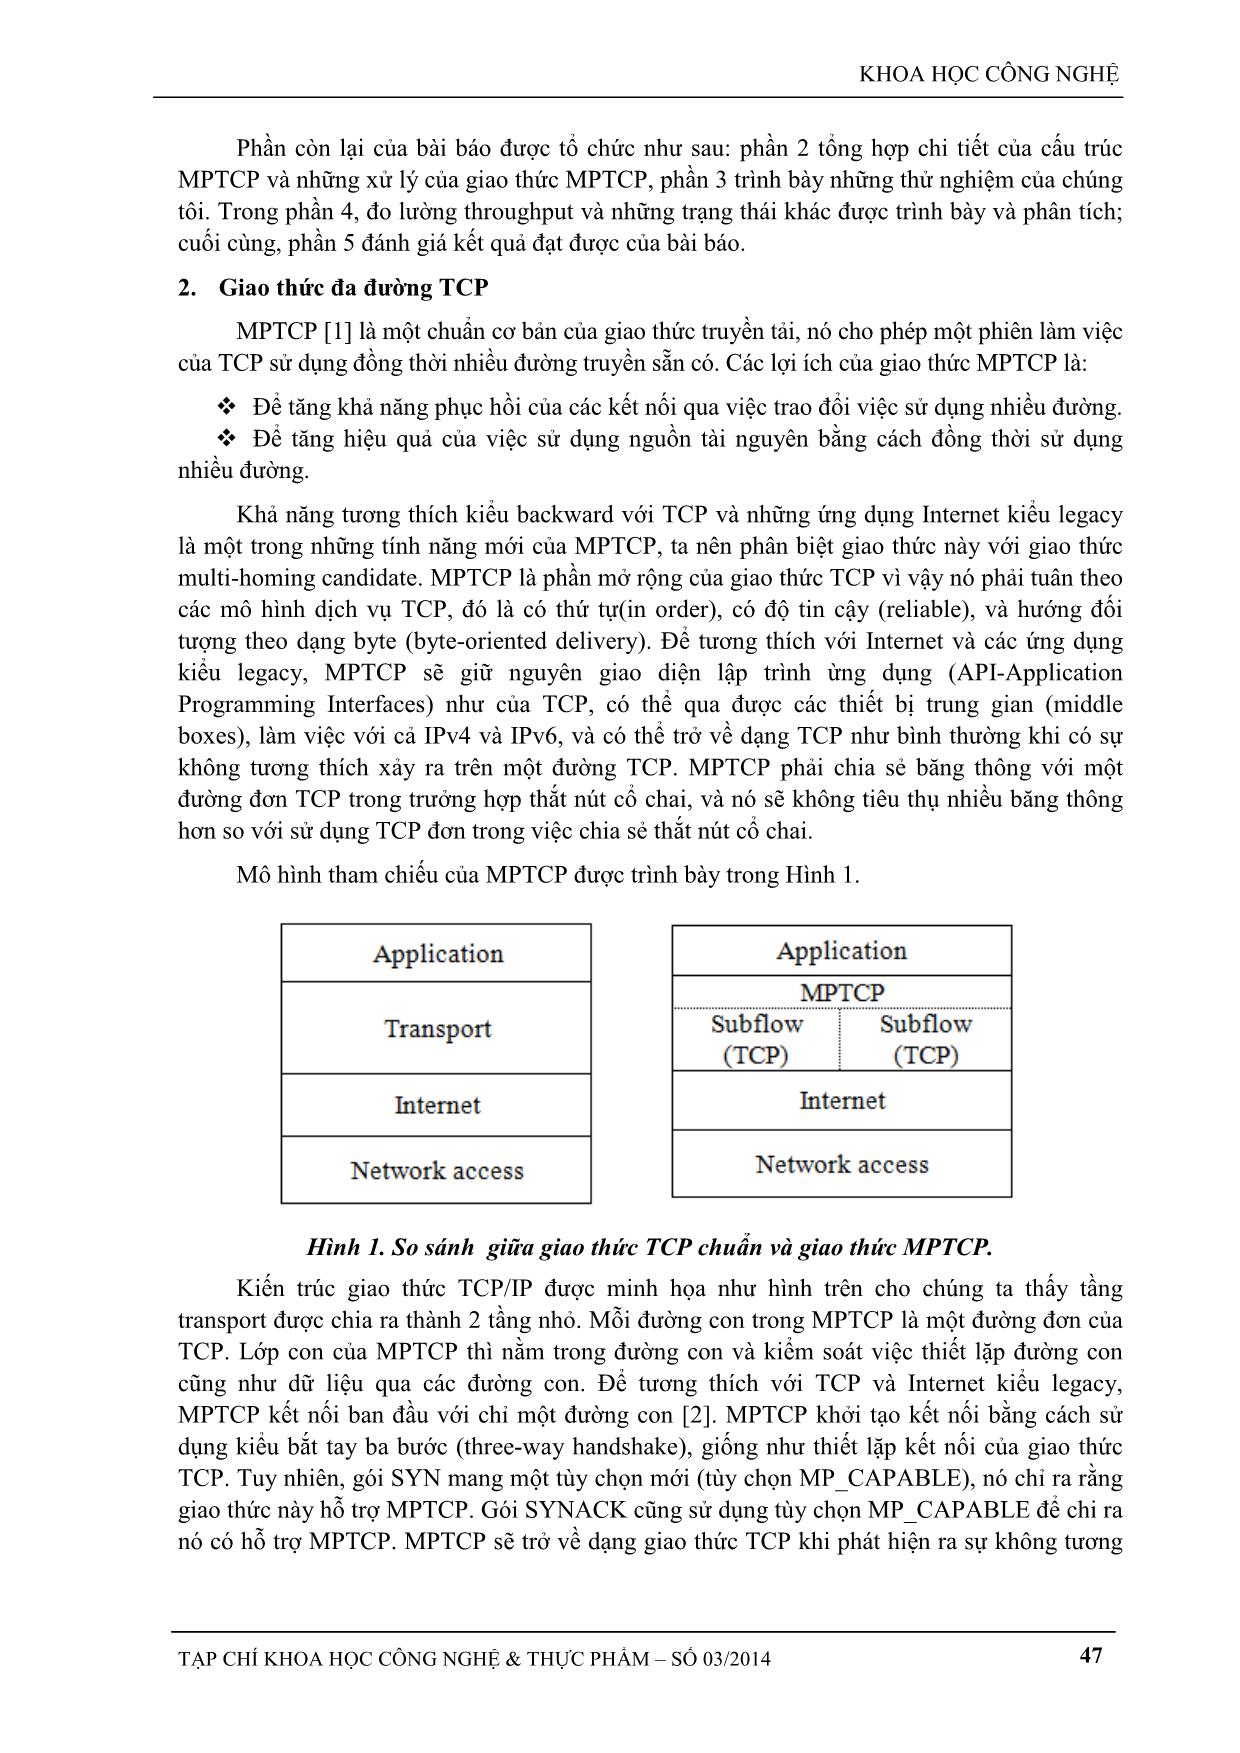 Đo lường, phân tích và đánh giá băng thông của giao thức đa đường TCP trang 2